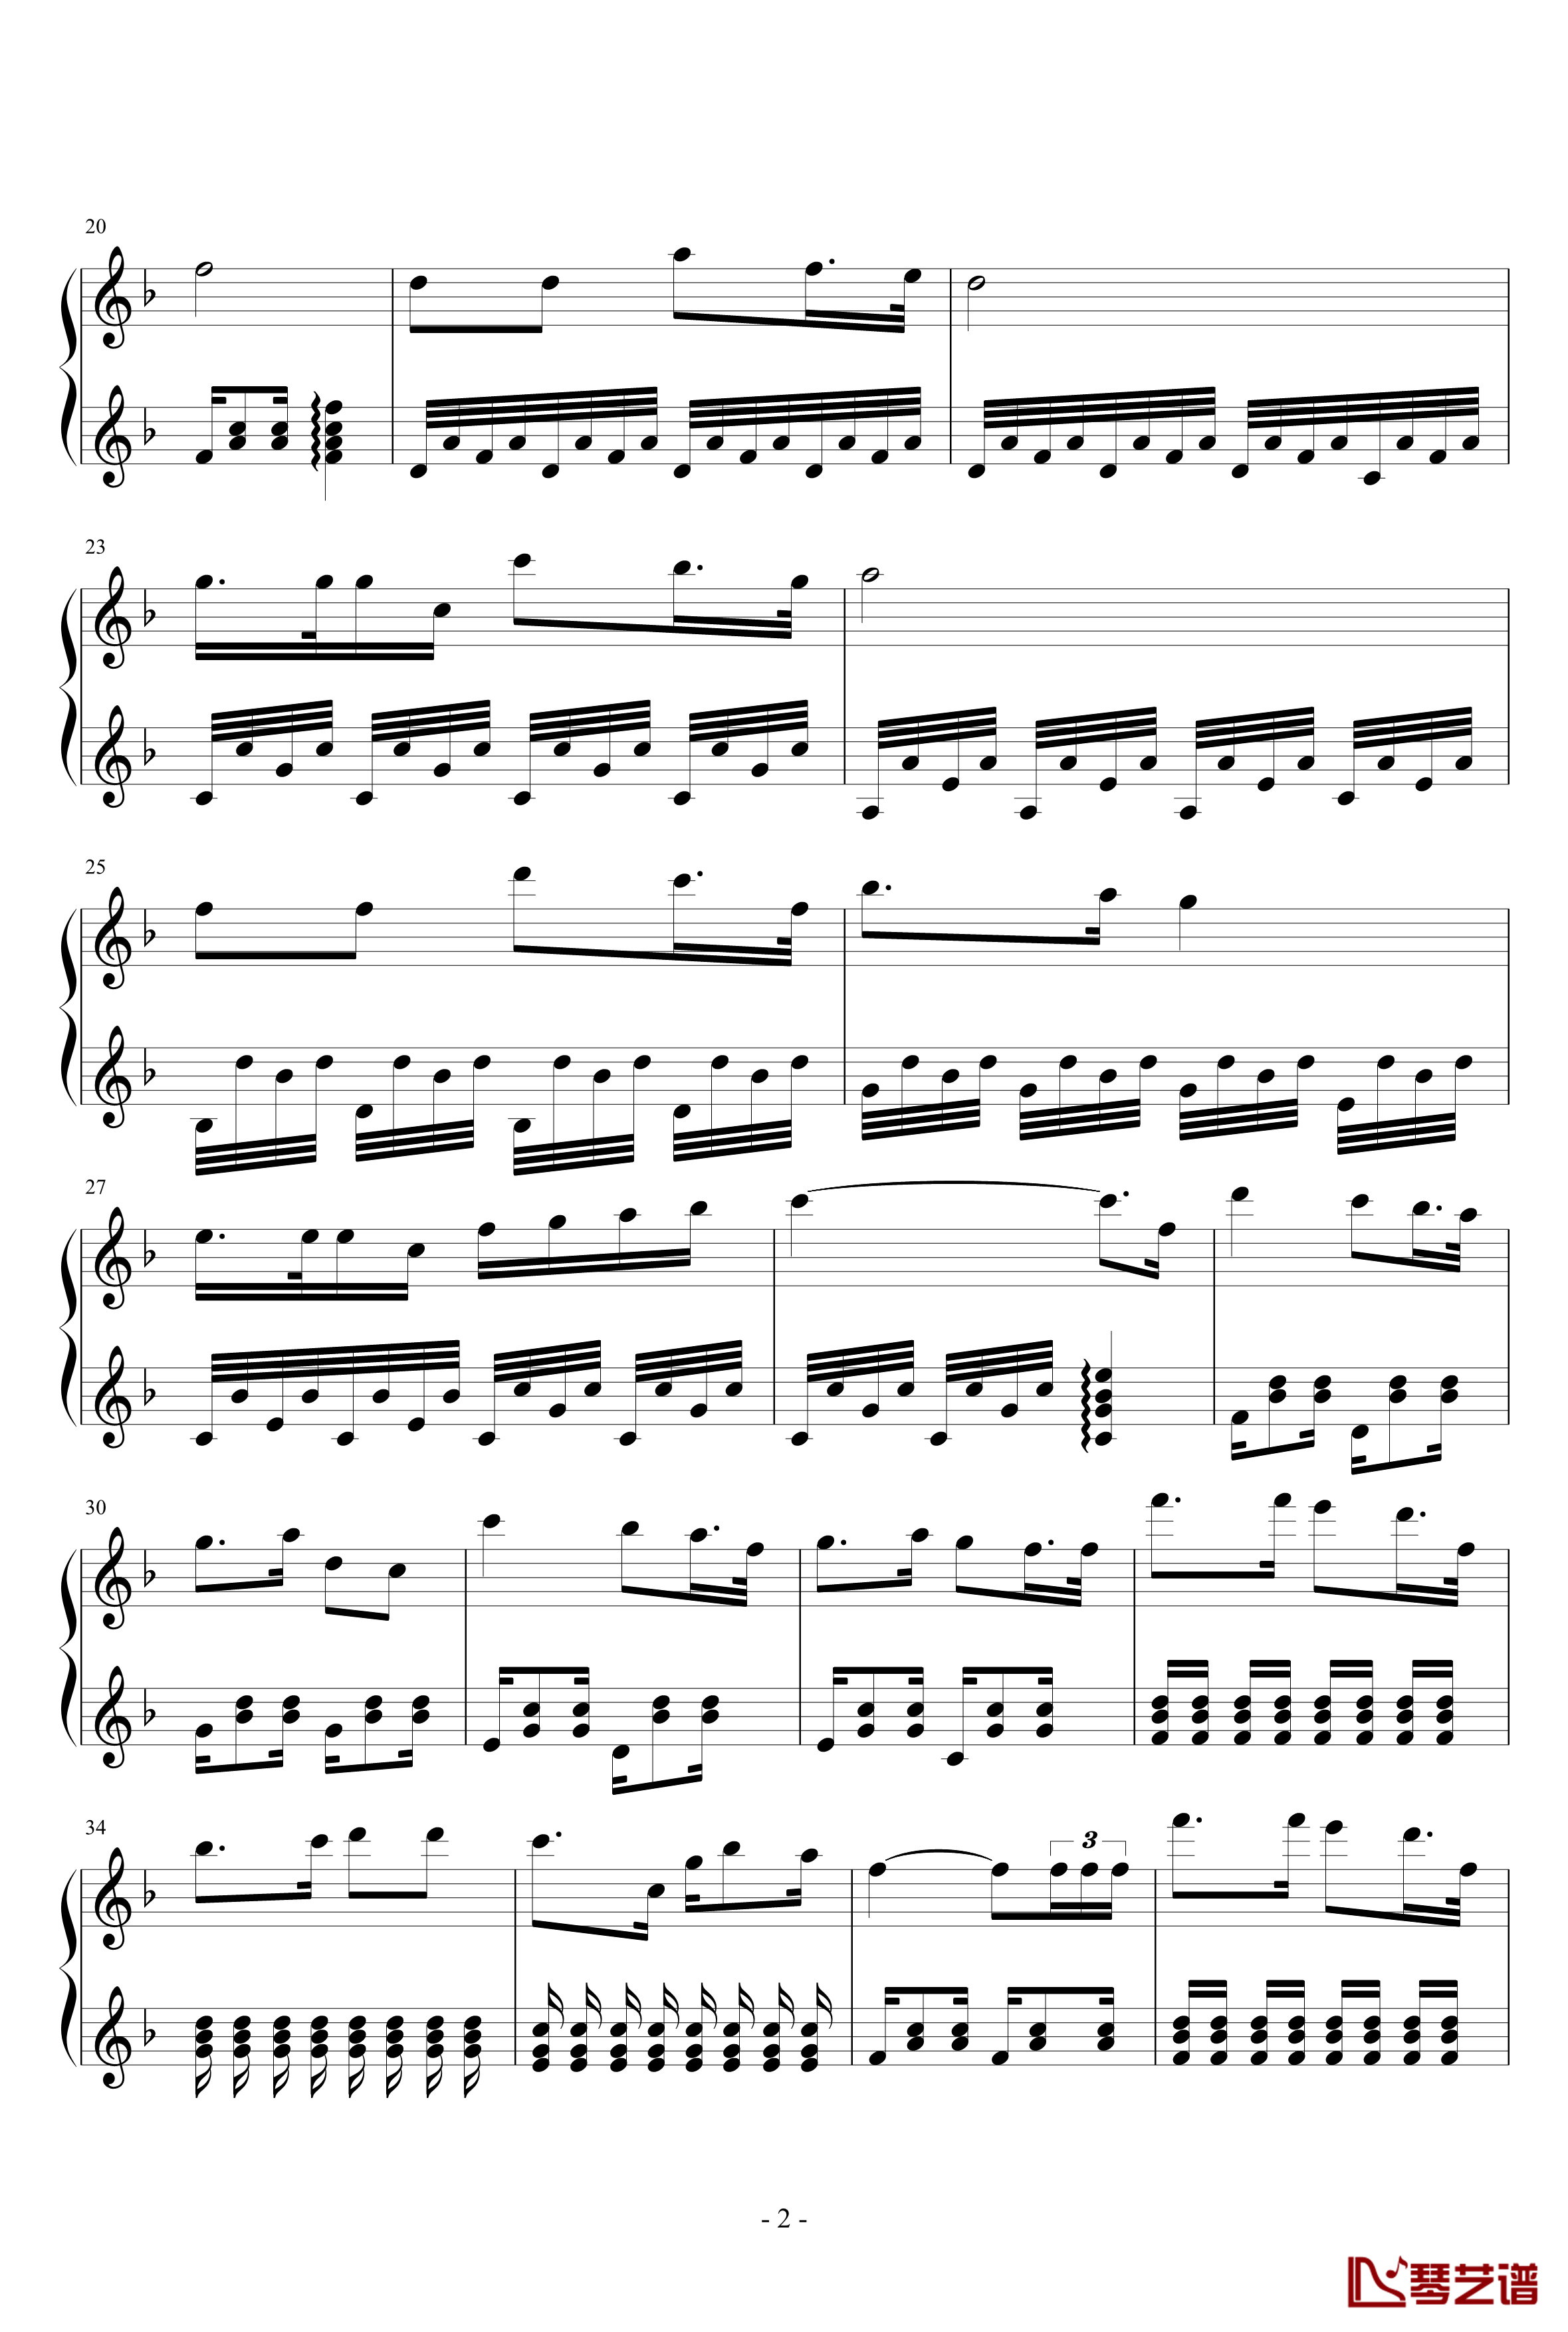 乐山一中校歌钢琴谱-非正式版2